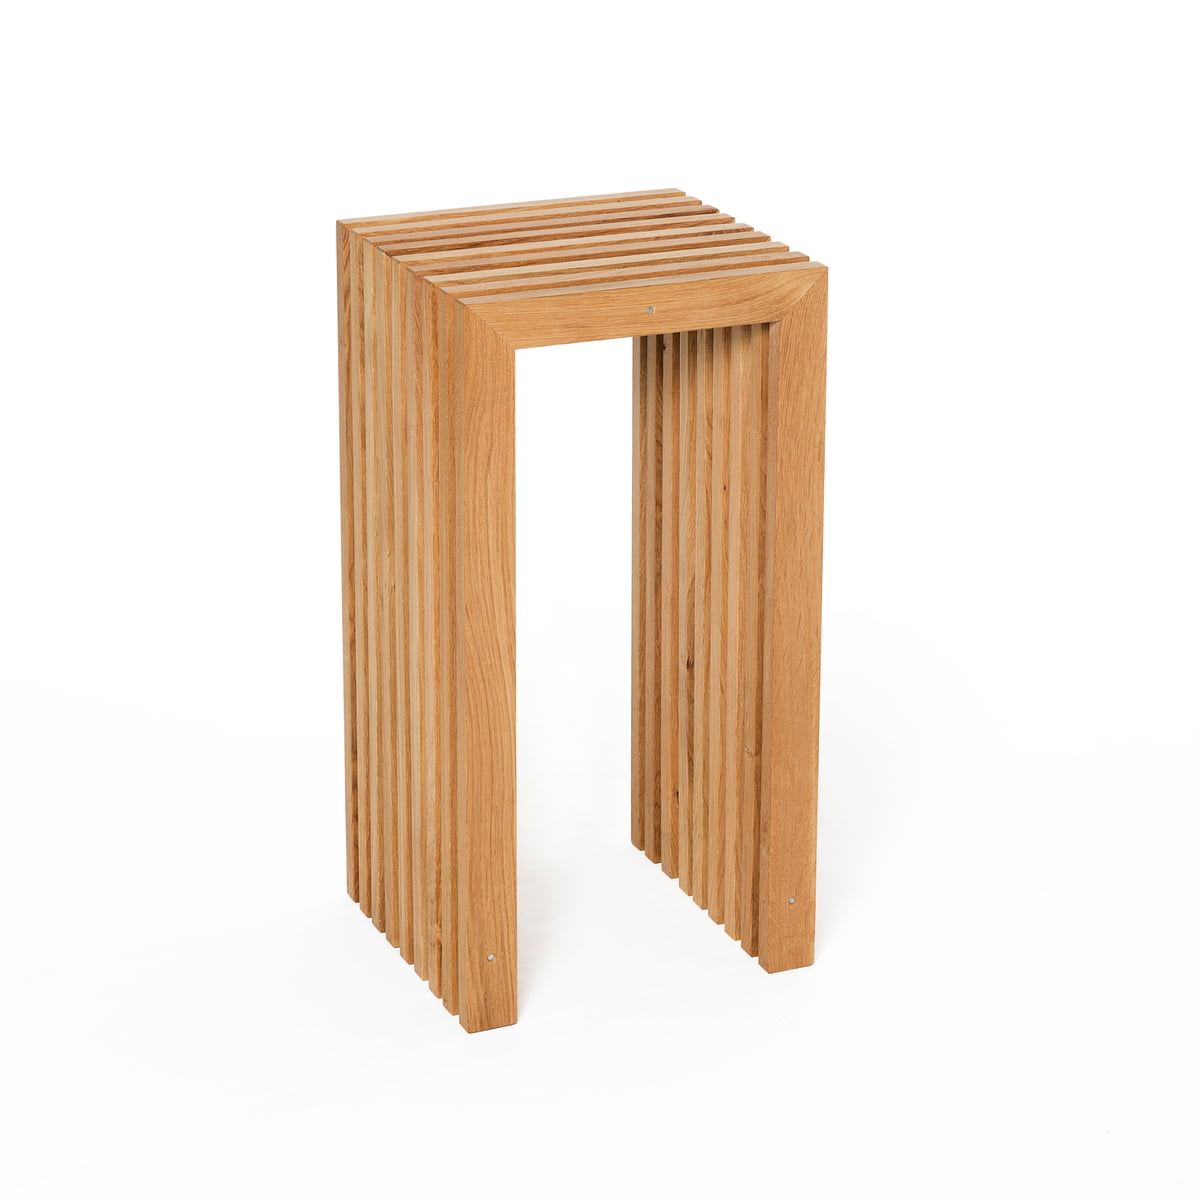 Raumgestalt - Chaise de bar en lamelles de chêne, H 64 cm, chêne huilé